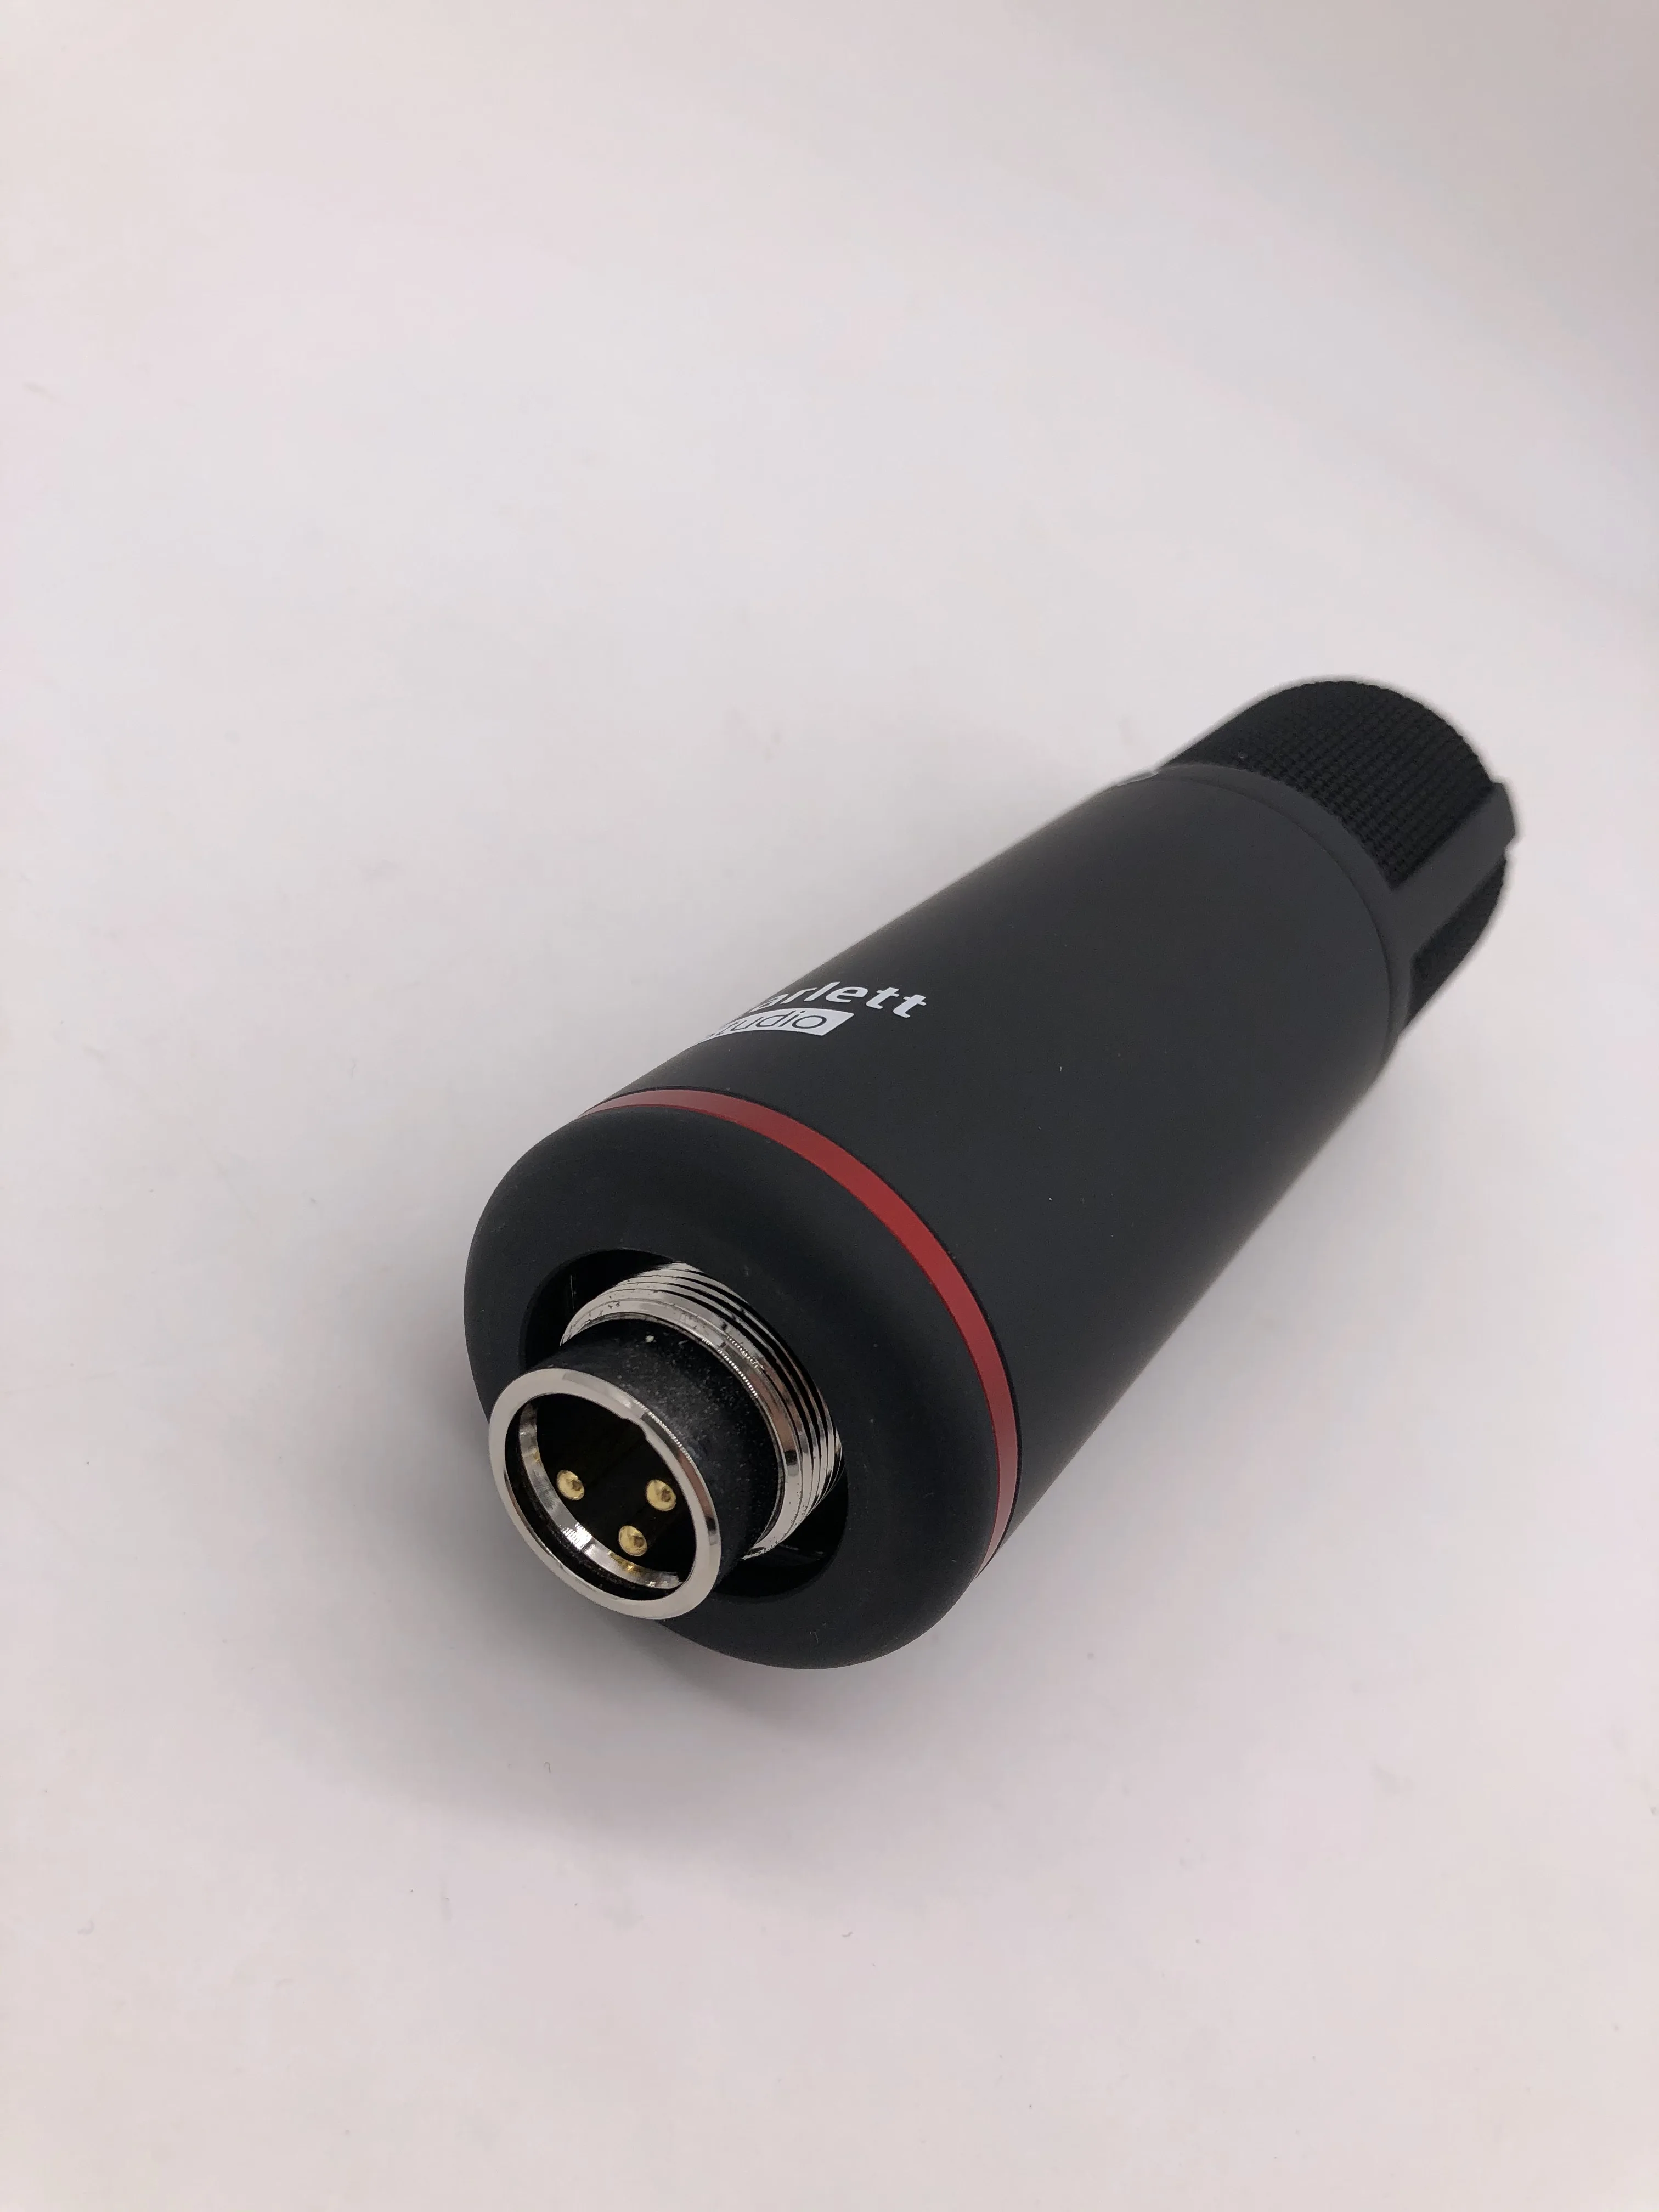 Хит продаж конденсаторный микрофон Focusrite Scarlett Studio CM25 MkIII качественный Студийный